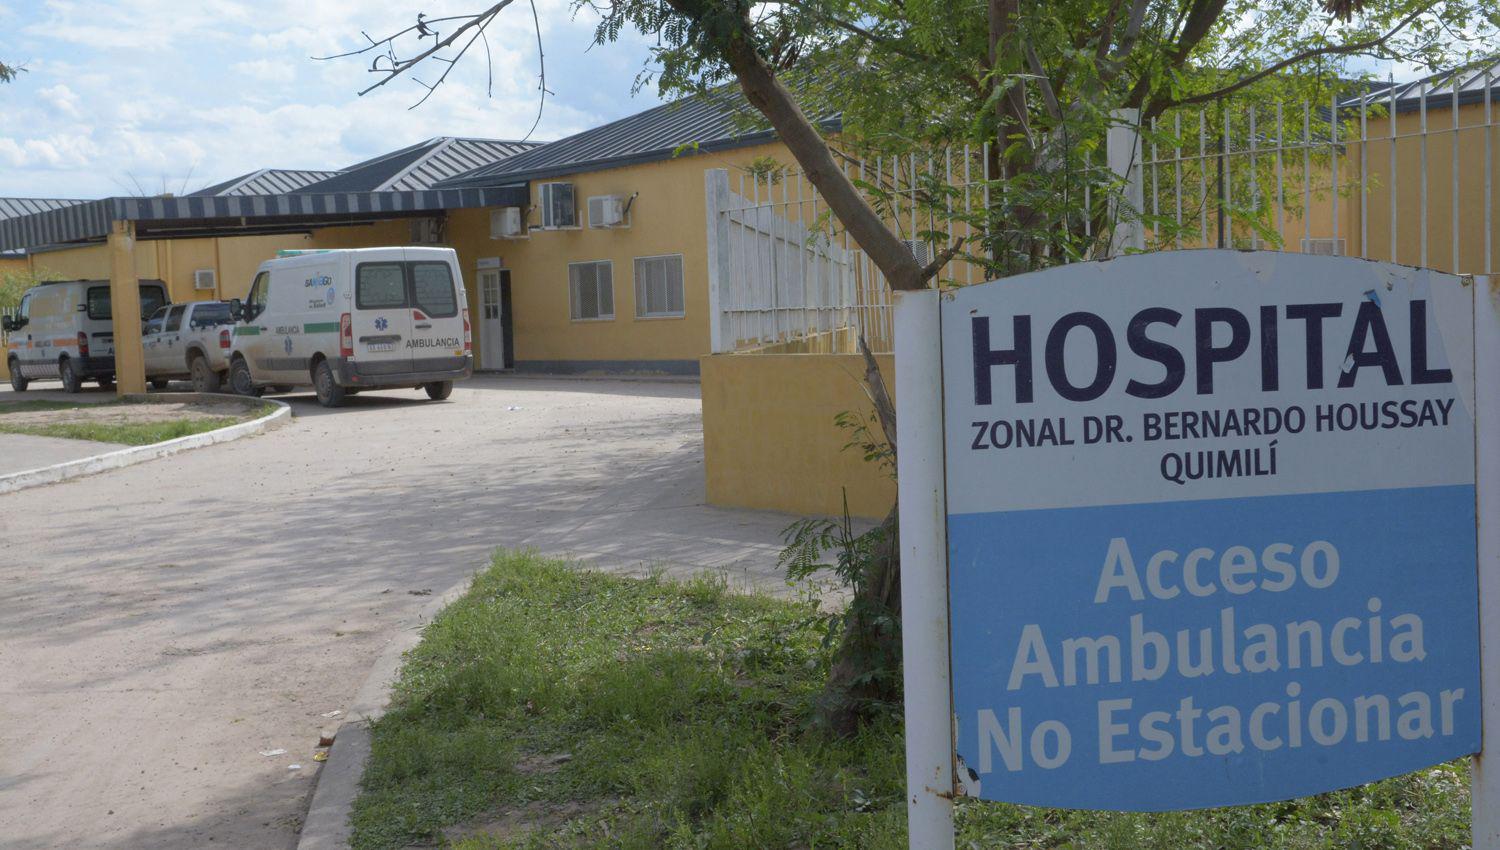 La joven confió su odisea a los médicos al arribar al Hospital
local en la ciudad de Quimilí